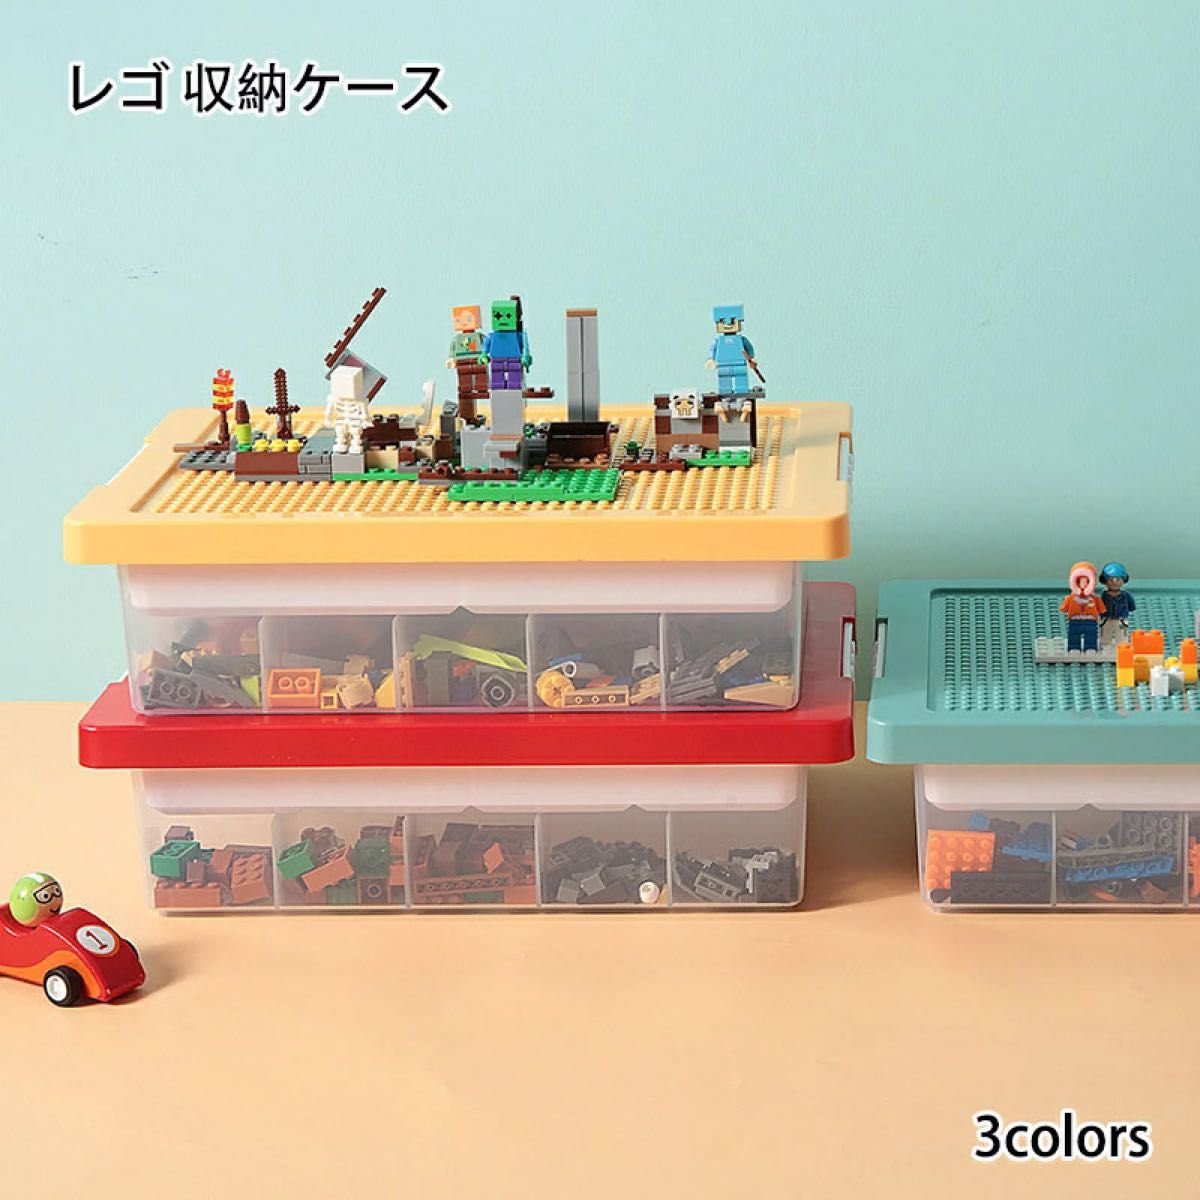 レゴ収納ケース ブロック おもちゃ収納 仕切り お片付け 知育家具 レゴ展示台 小物収納 持ち運び やすい 収納ボックス フタ付